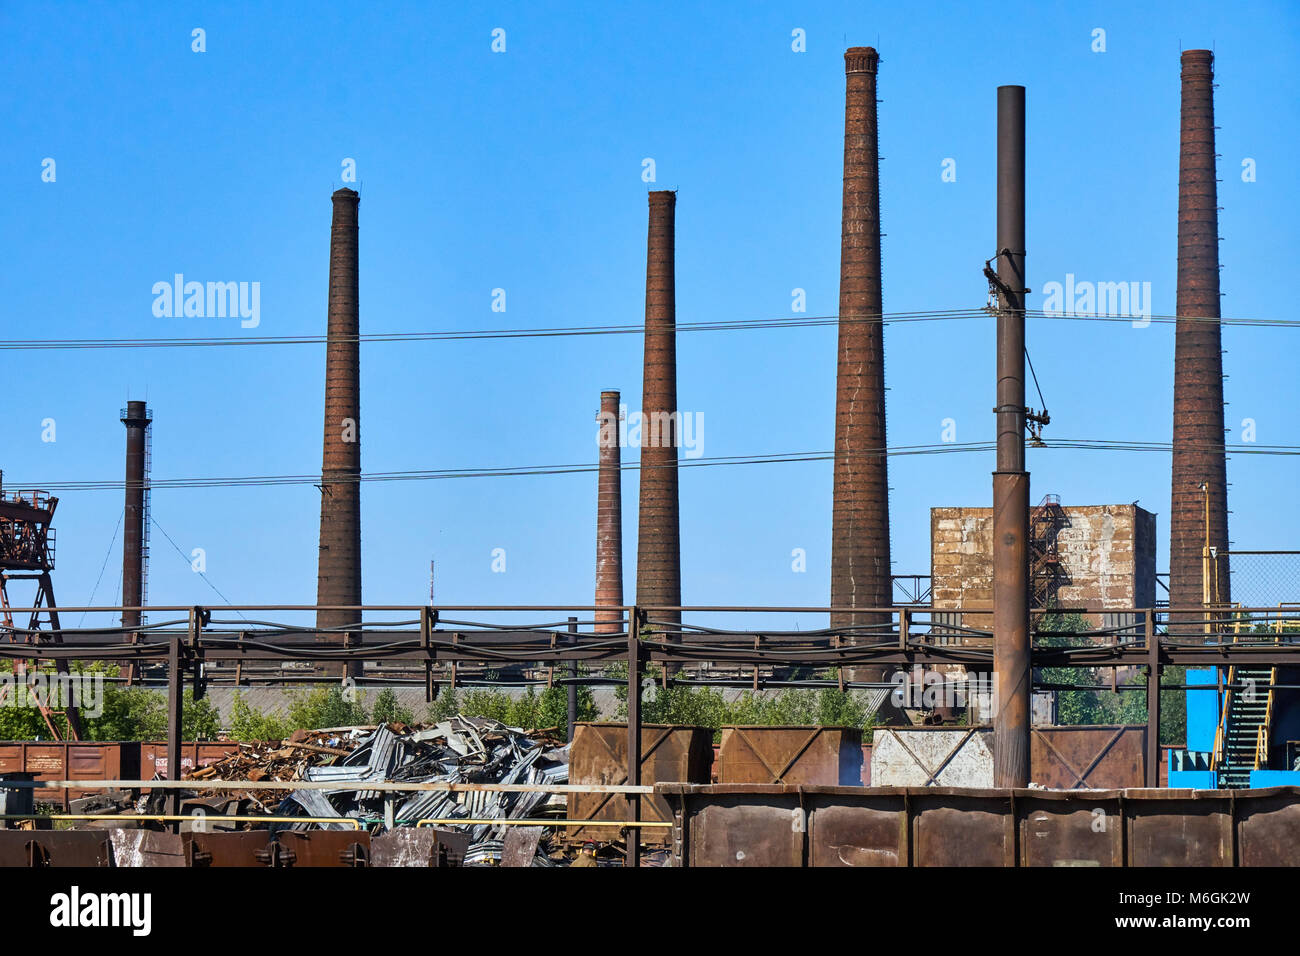 Complejo industrial abandonado, con estacas de humo altas y desgastadas que se elevan sobre los edificios en ruinas contra un cielo azul claro Foto de stock